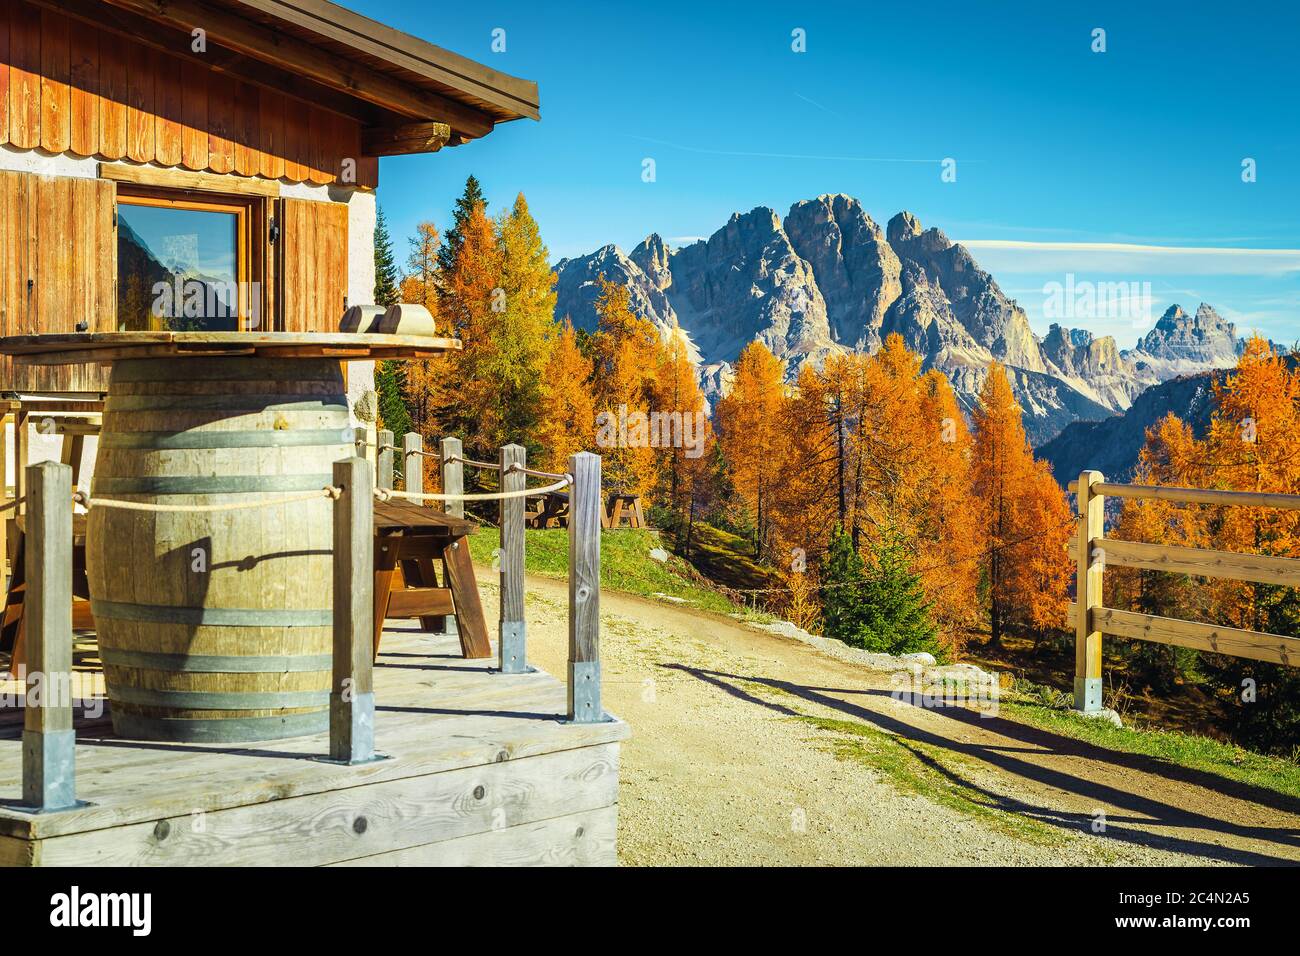 Lieu d'hébergement confortable avec maison en bois dans les montagnes. Fantastique emplacement de loisirs et de randonnée dans la forêt d'automne colorée, Dolomites, Italie, Banque D'Images